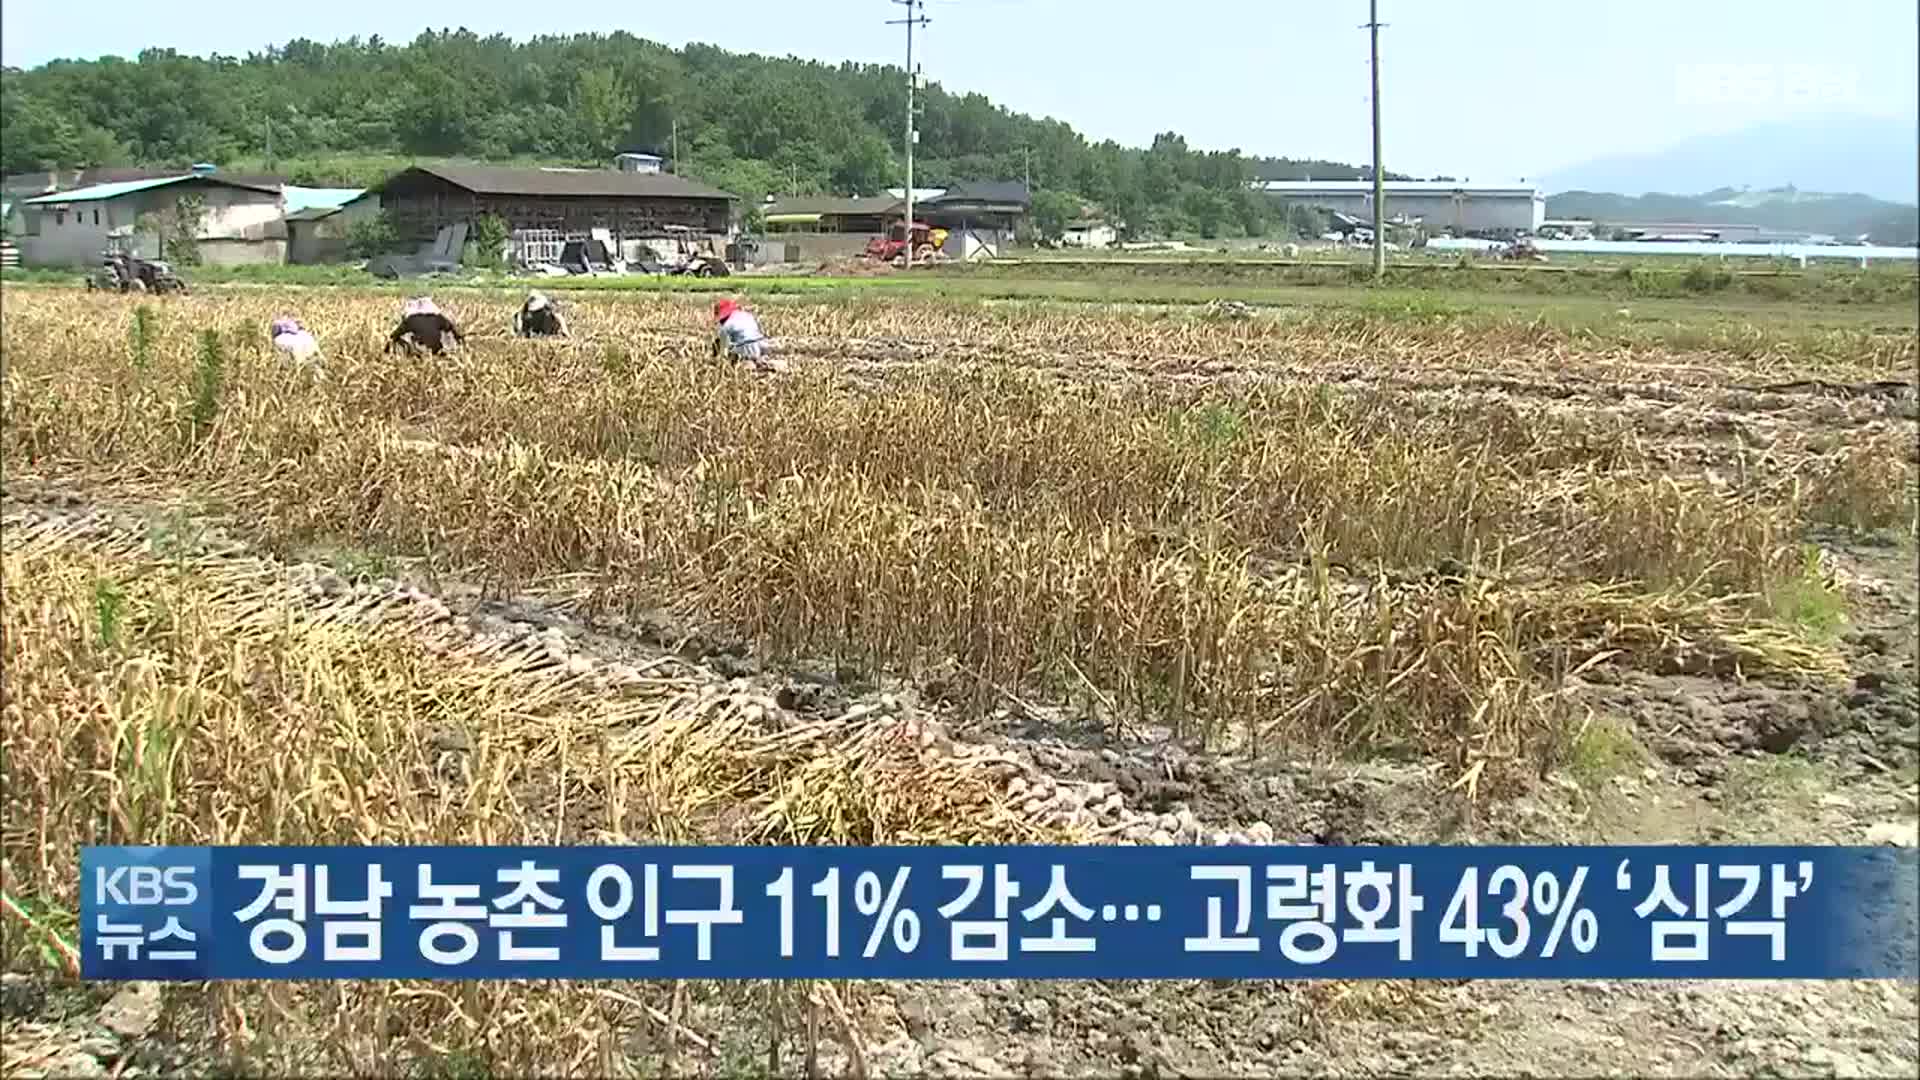 경남 농촌 인구 11% 감소…고령화 43% ‘심각’